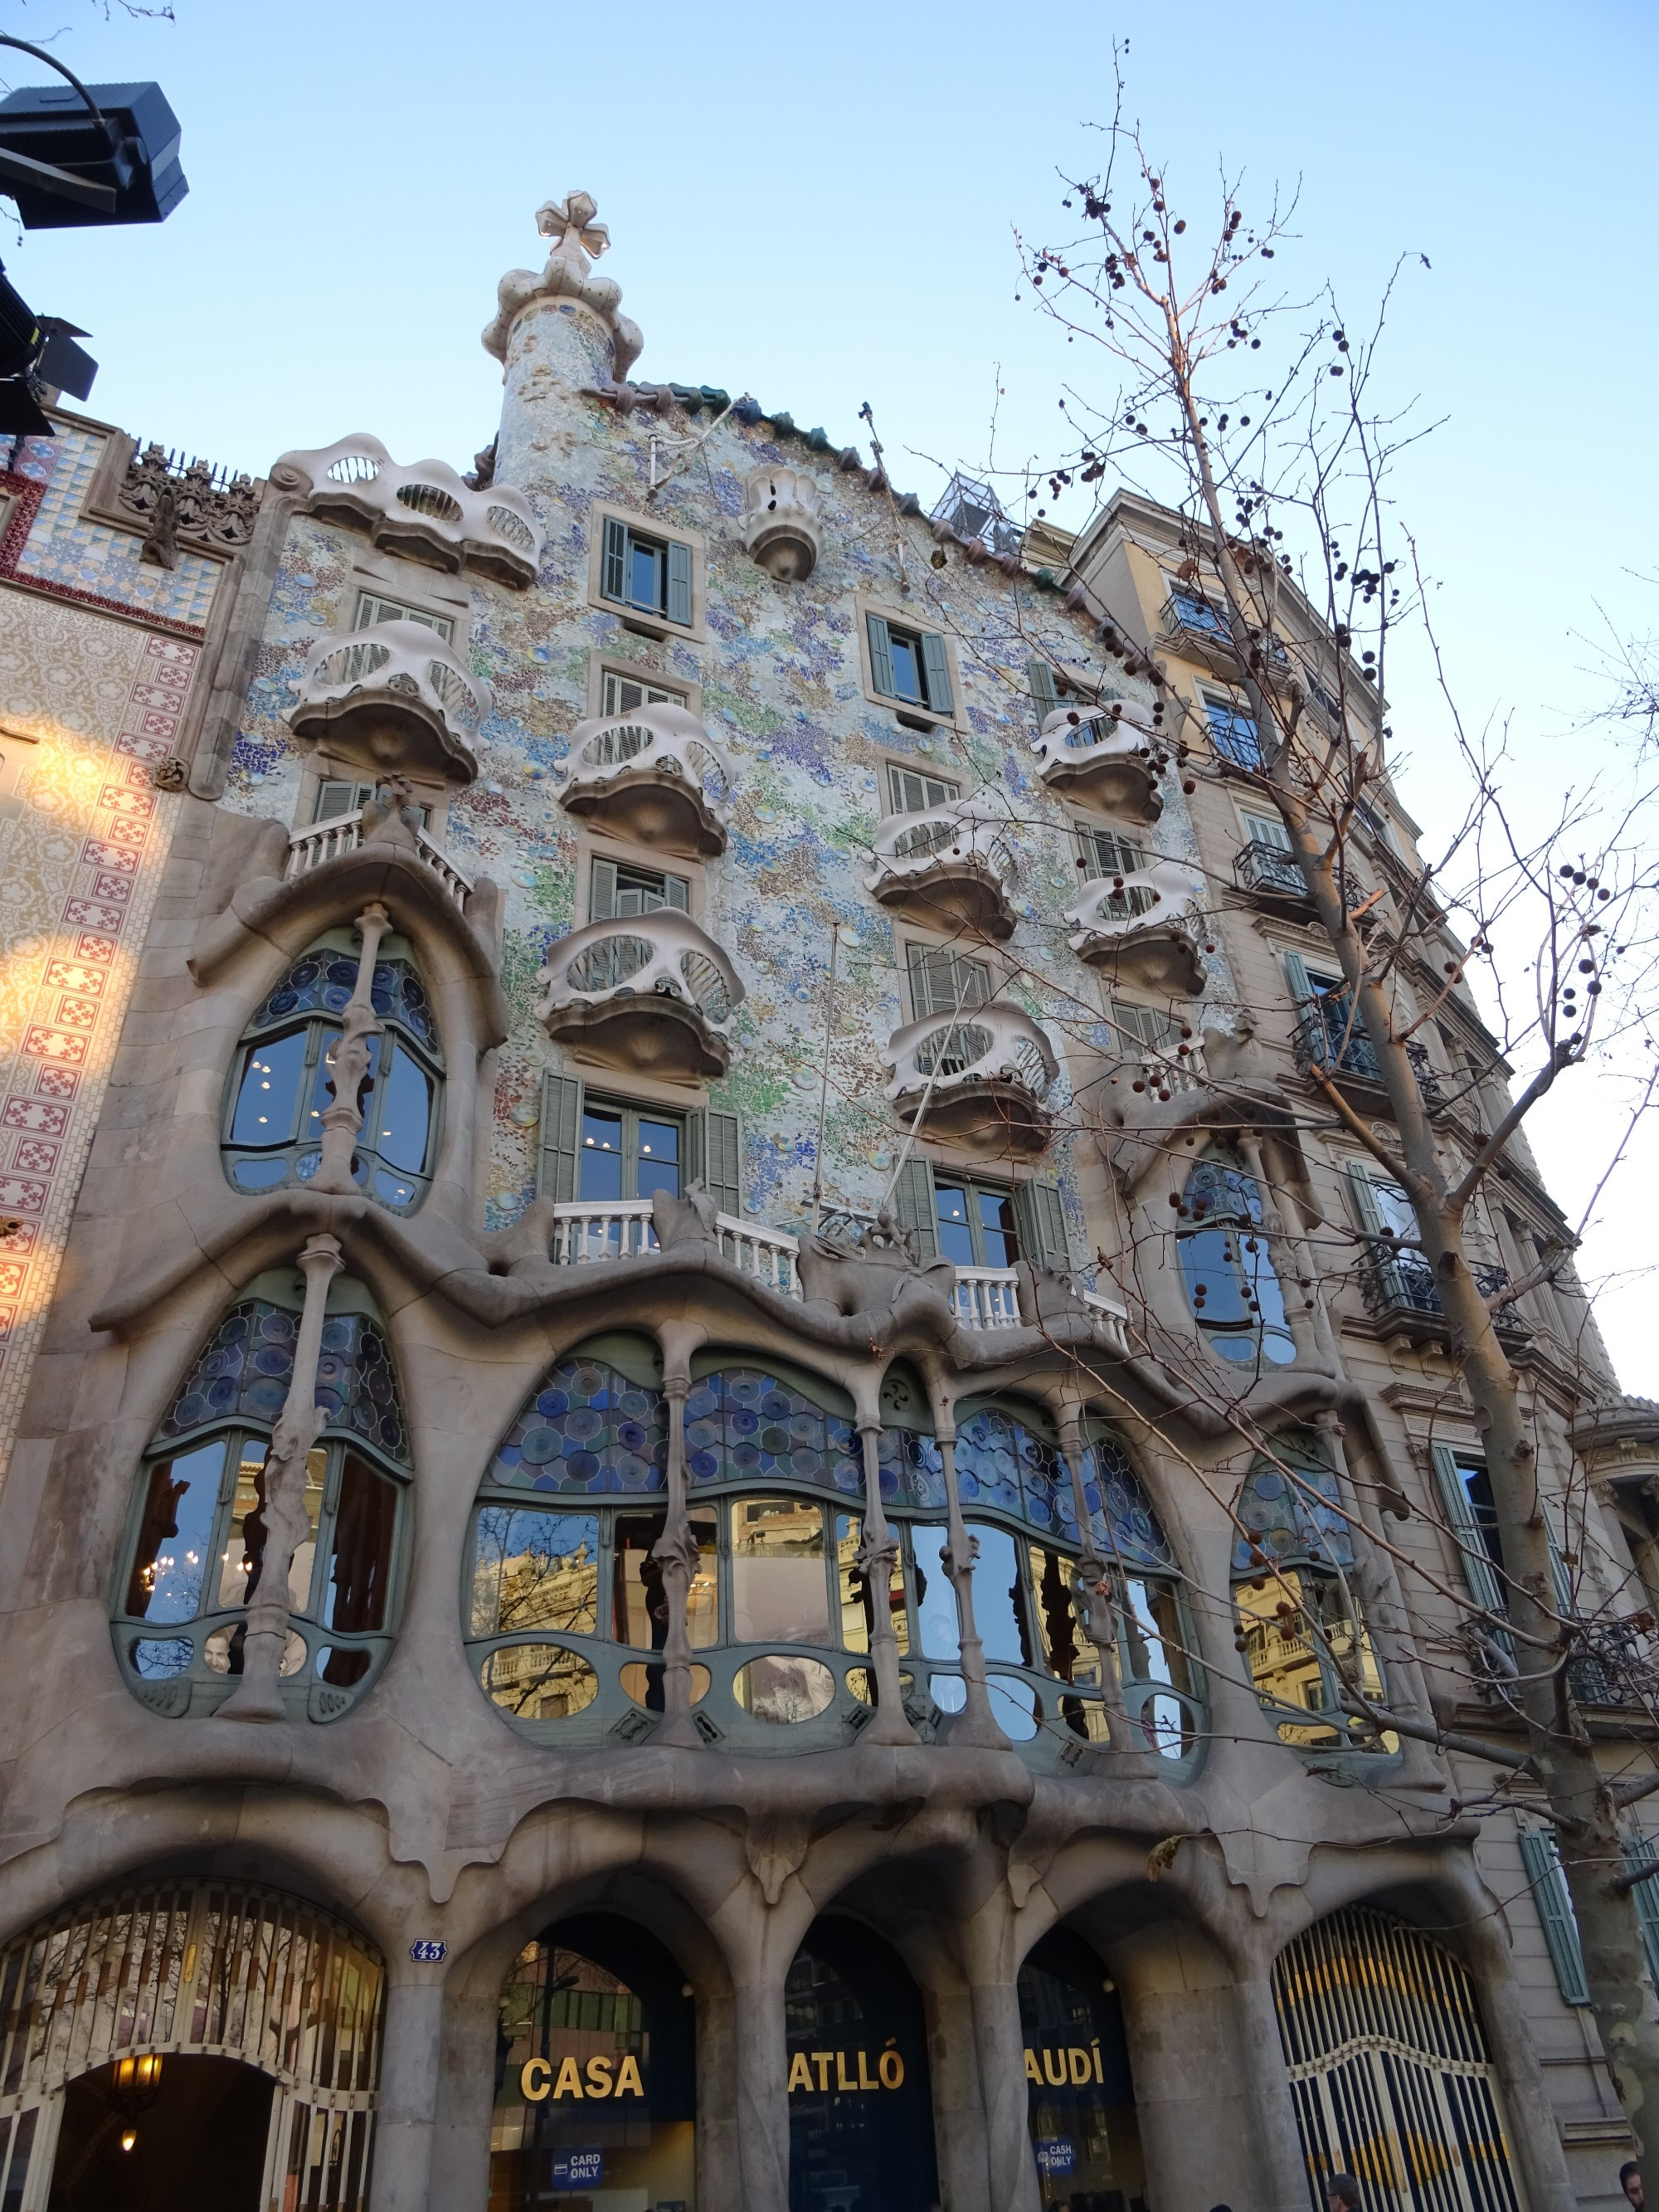 Barcelona<br/>
Casa Batllo